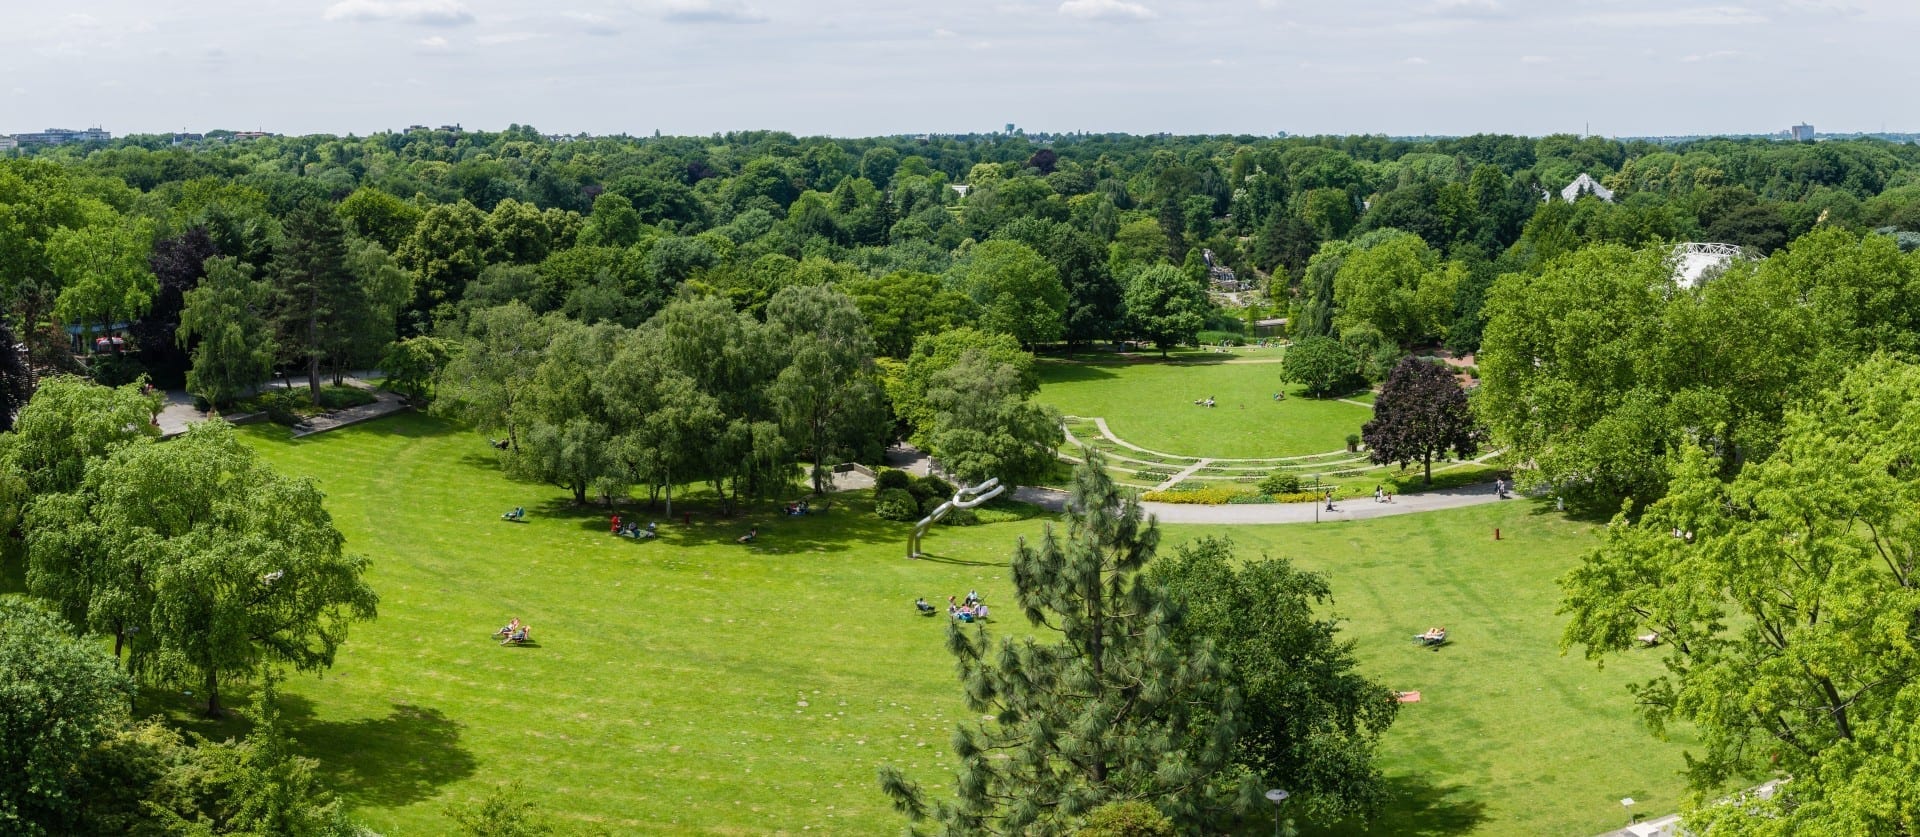 Vista del jardín botánico de Grugapark desde una torre dentro del parque Essen Alemania